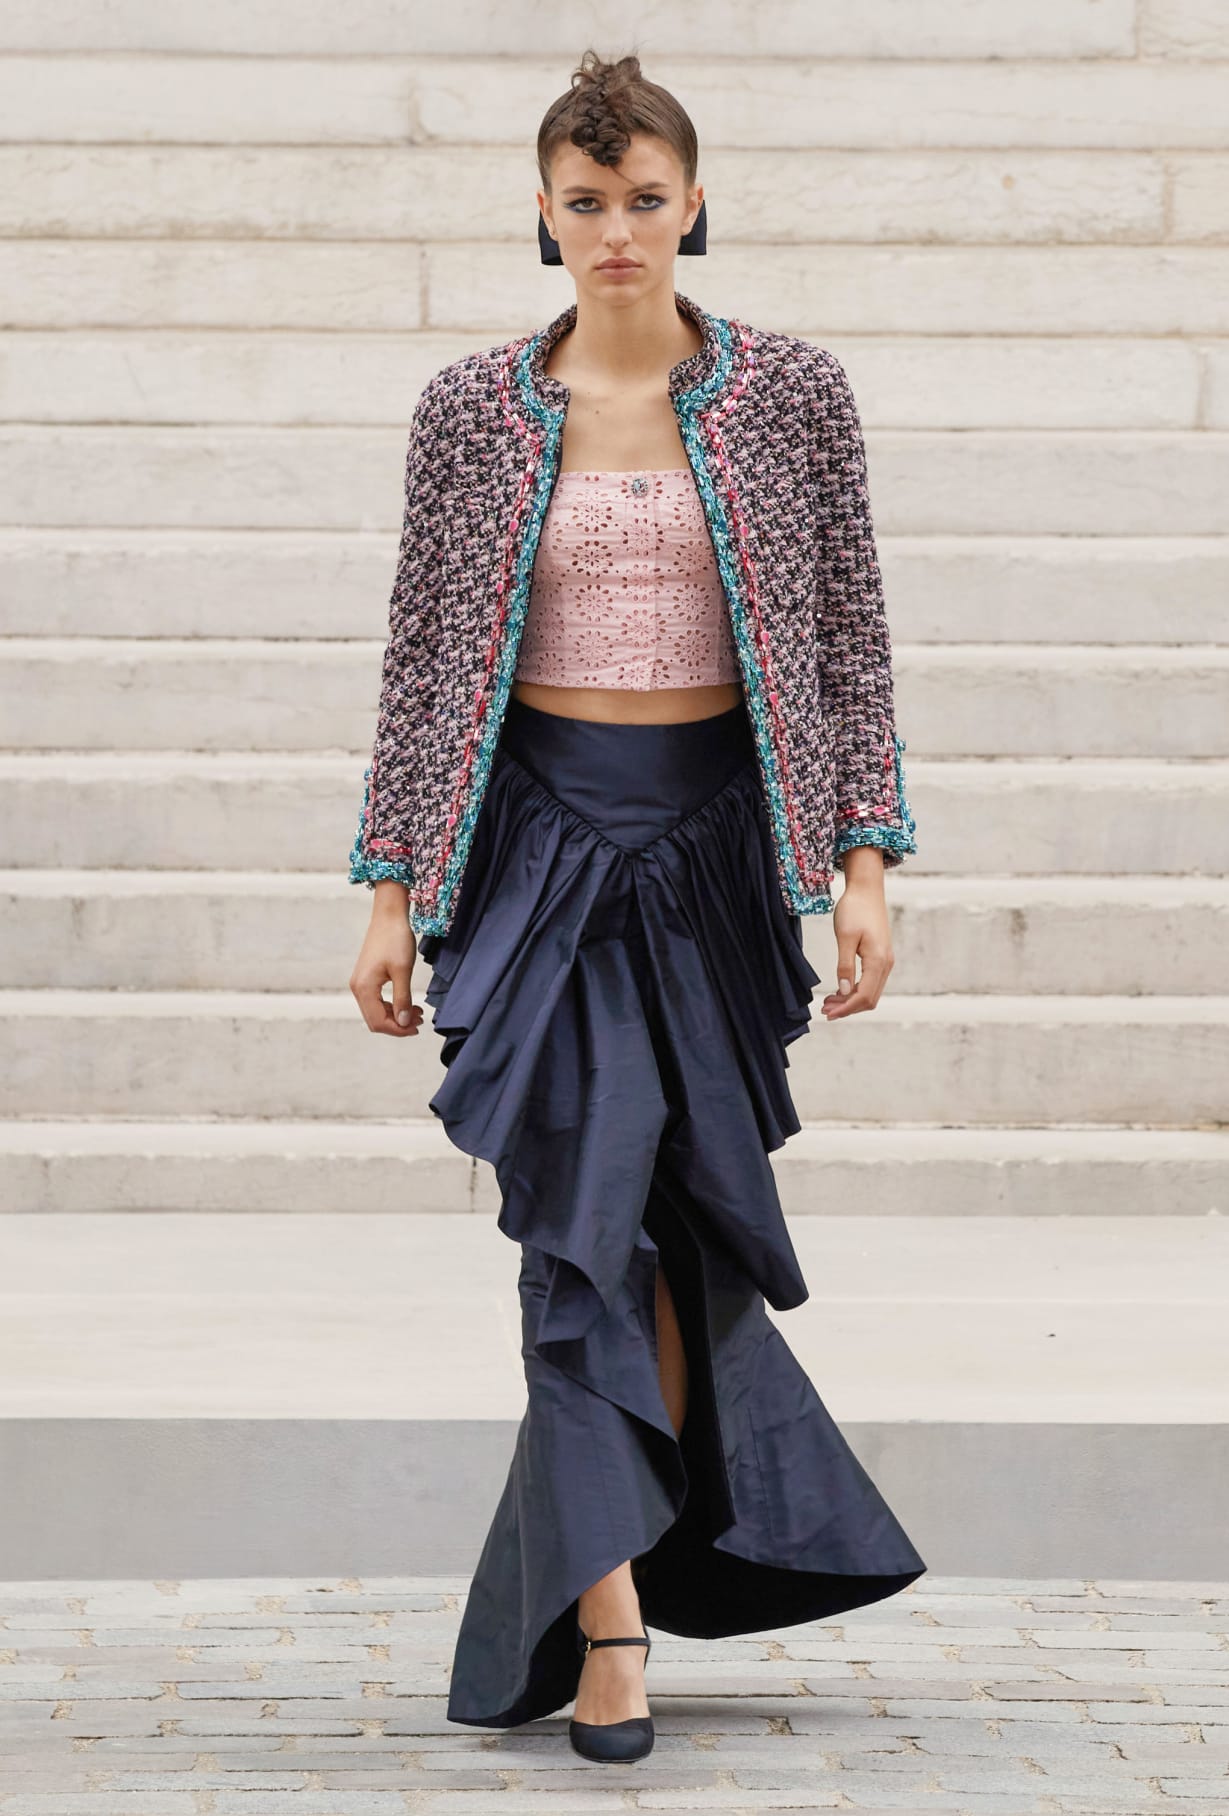 Chanel Haute Couture 2021: Sự tối giản của sàn diễn để tôn vinh trang phục  - Ảnh 12